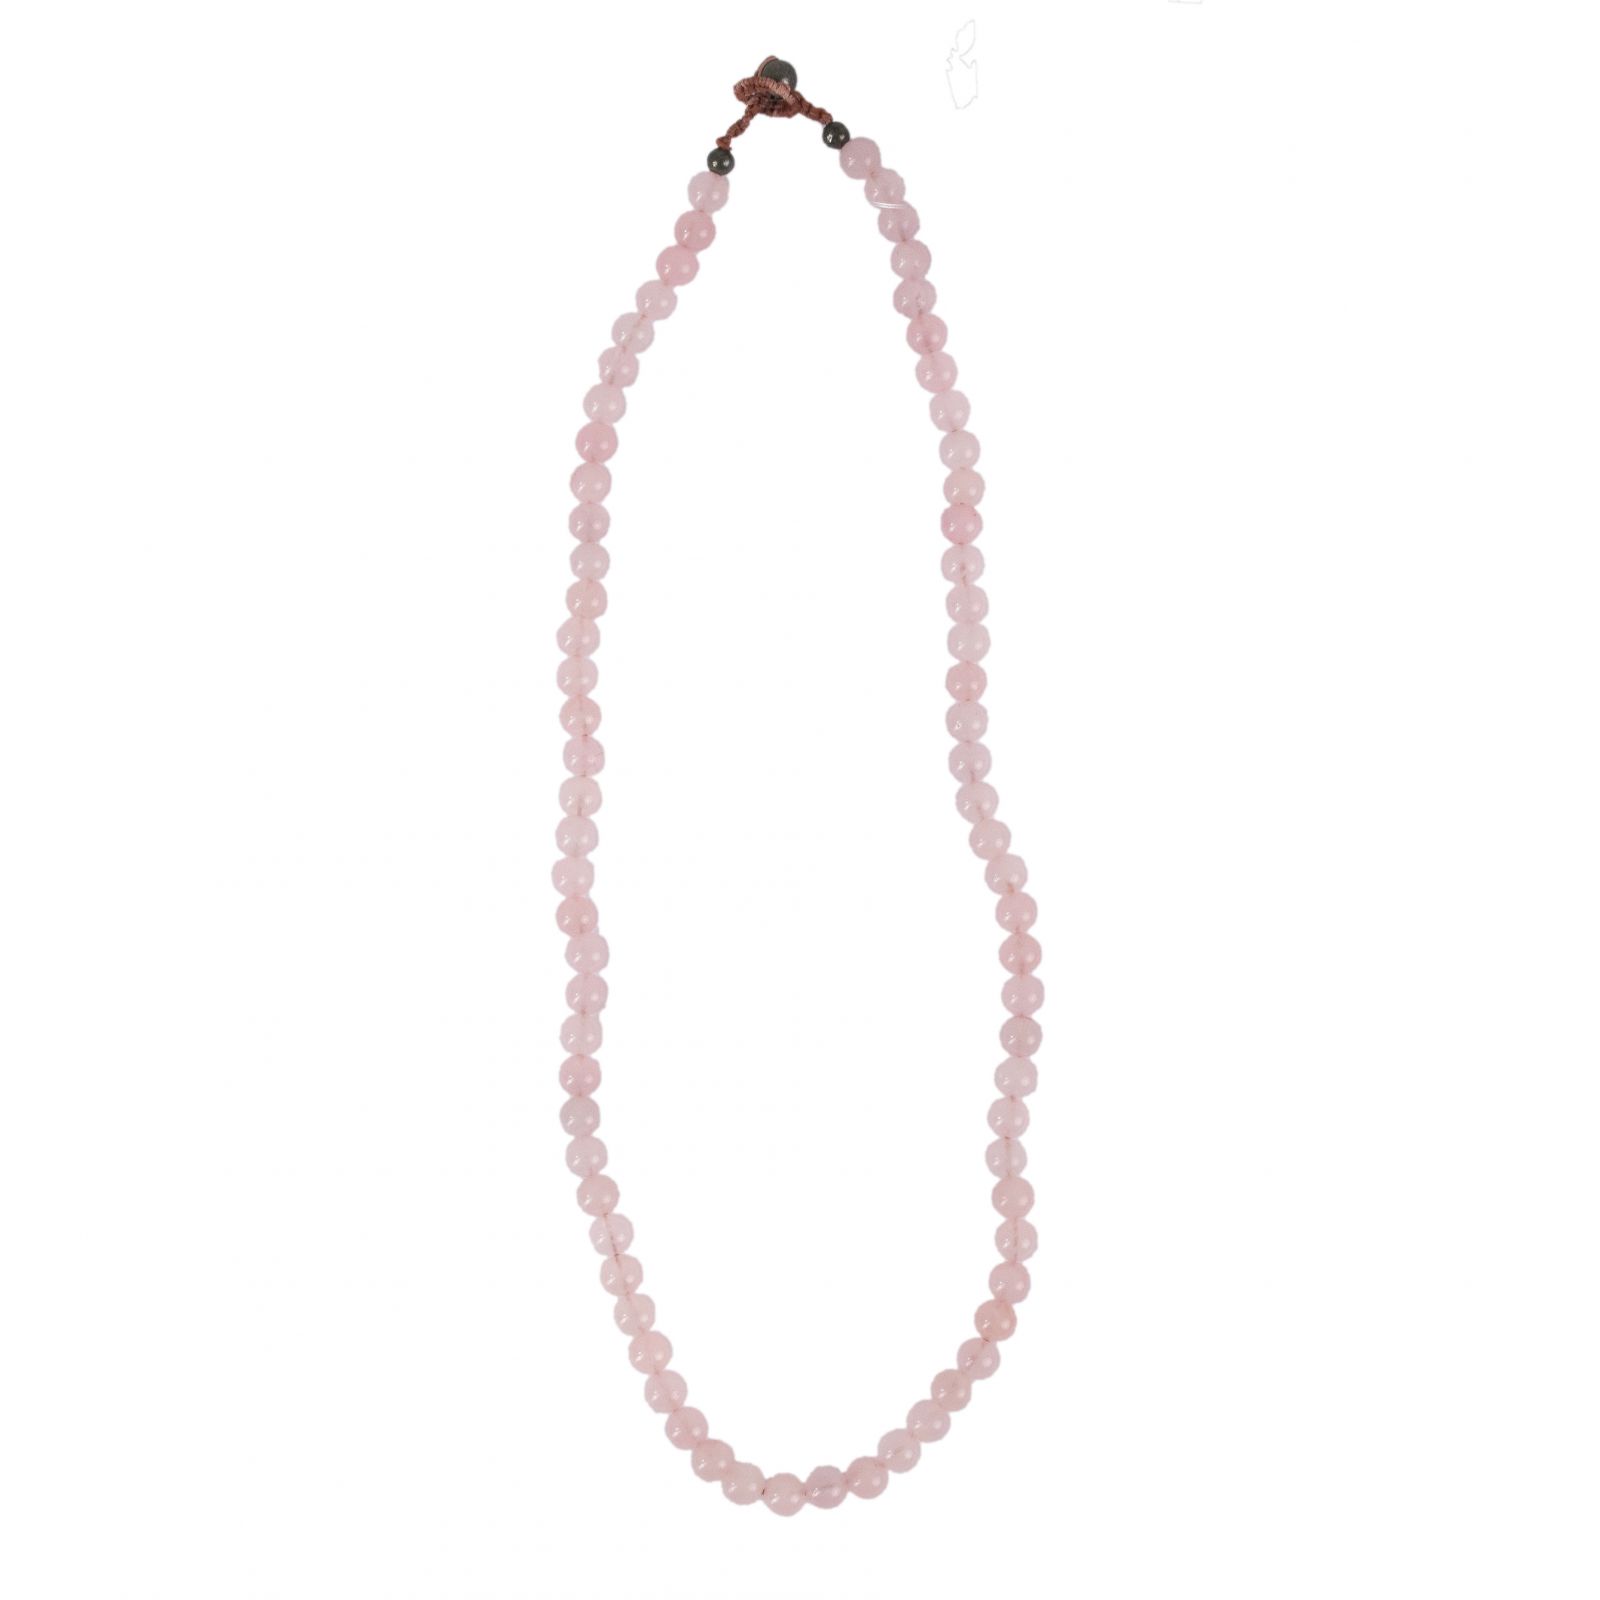 Rose Quartz bead necklace Thailand